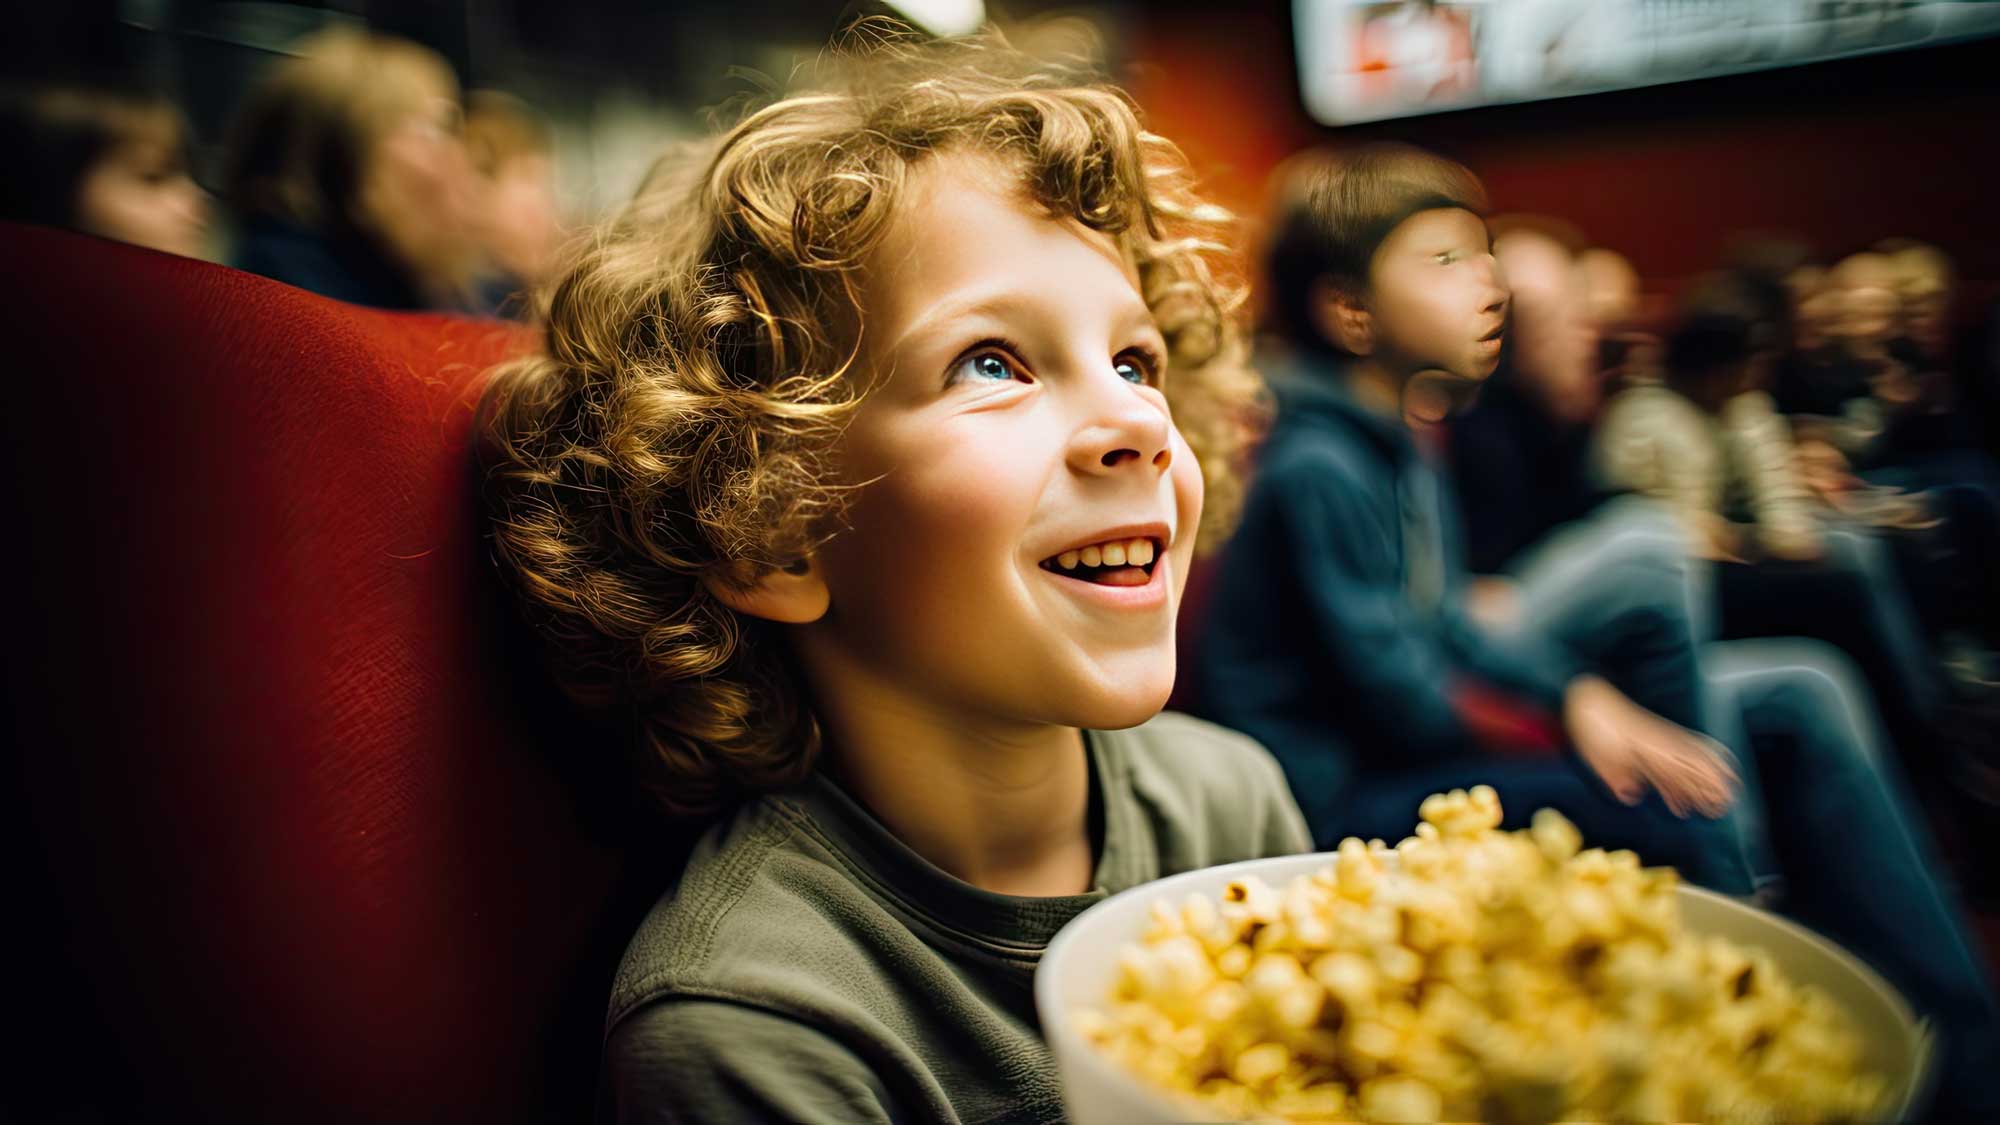 Adobe Stock KI-generert bilde av gutt på kino som spiser popcorn